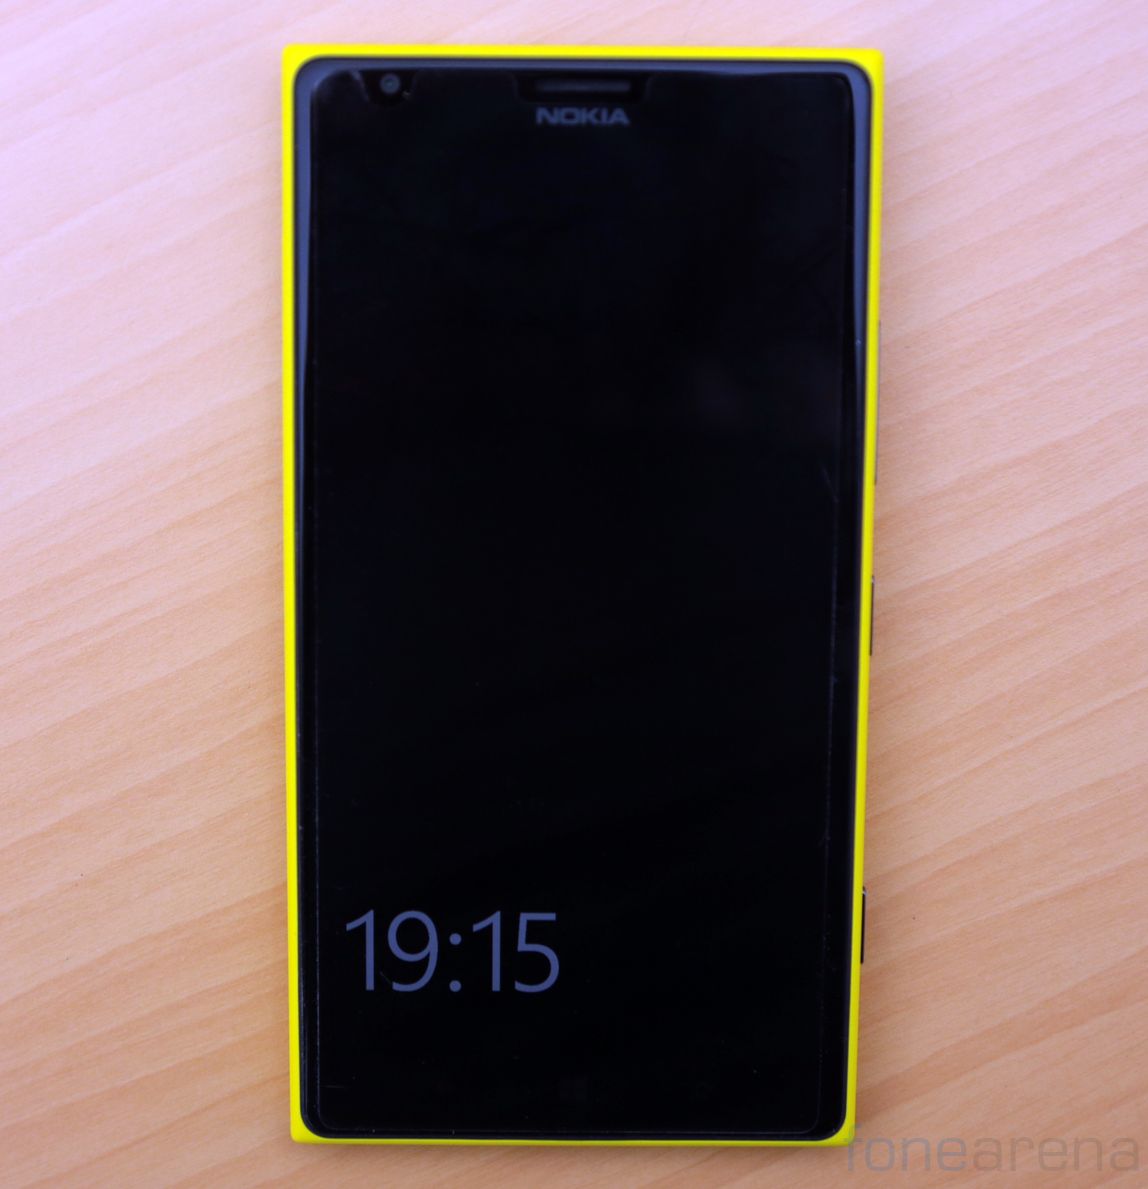 Nokia Lumia Re Big And Bold